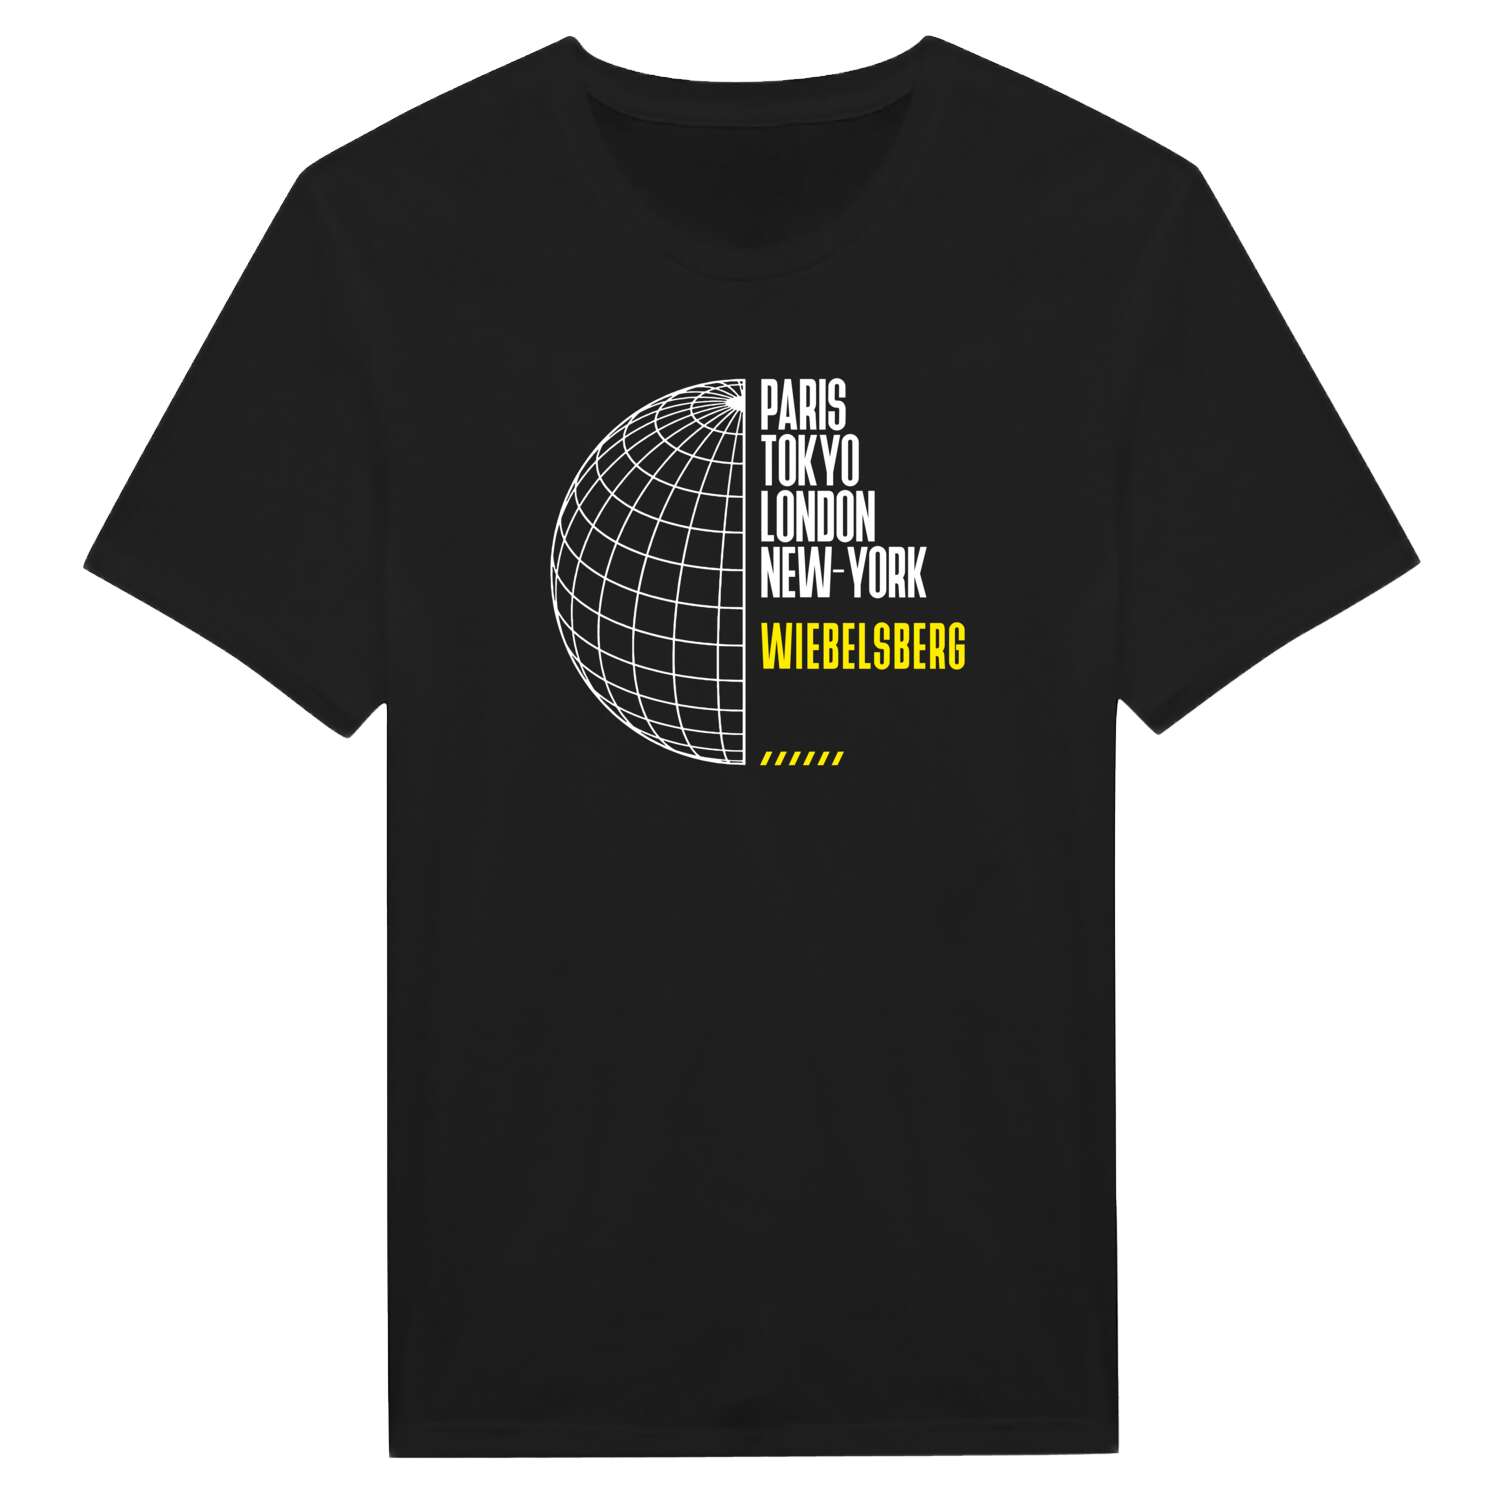 Wiebelsberg T-Shirt »Paris Tokyo London«